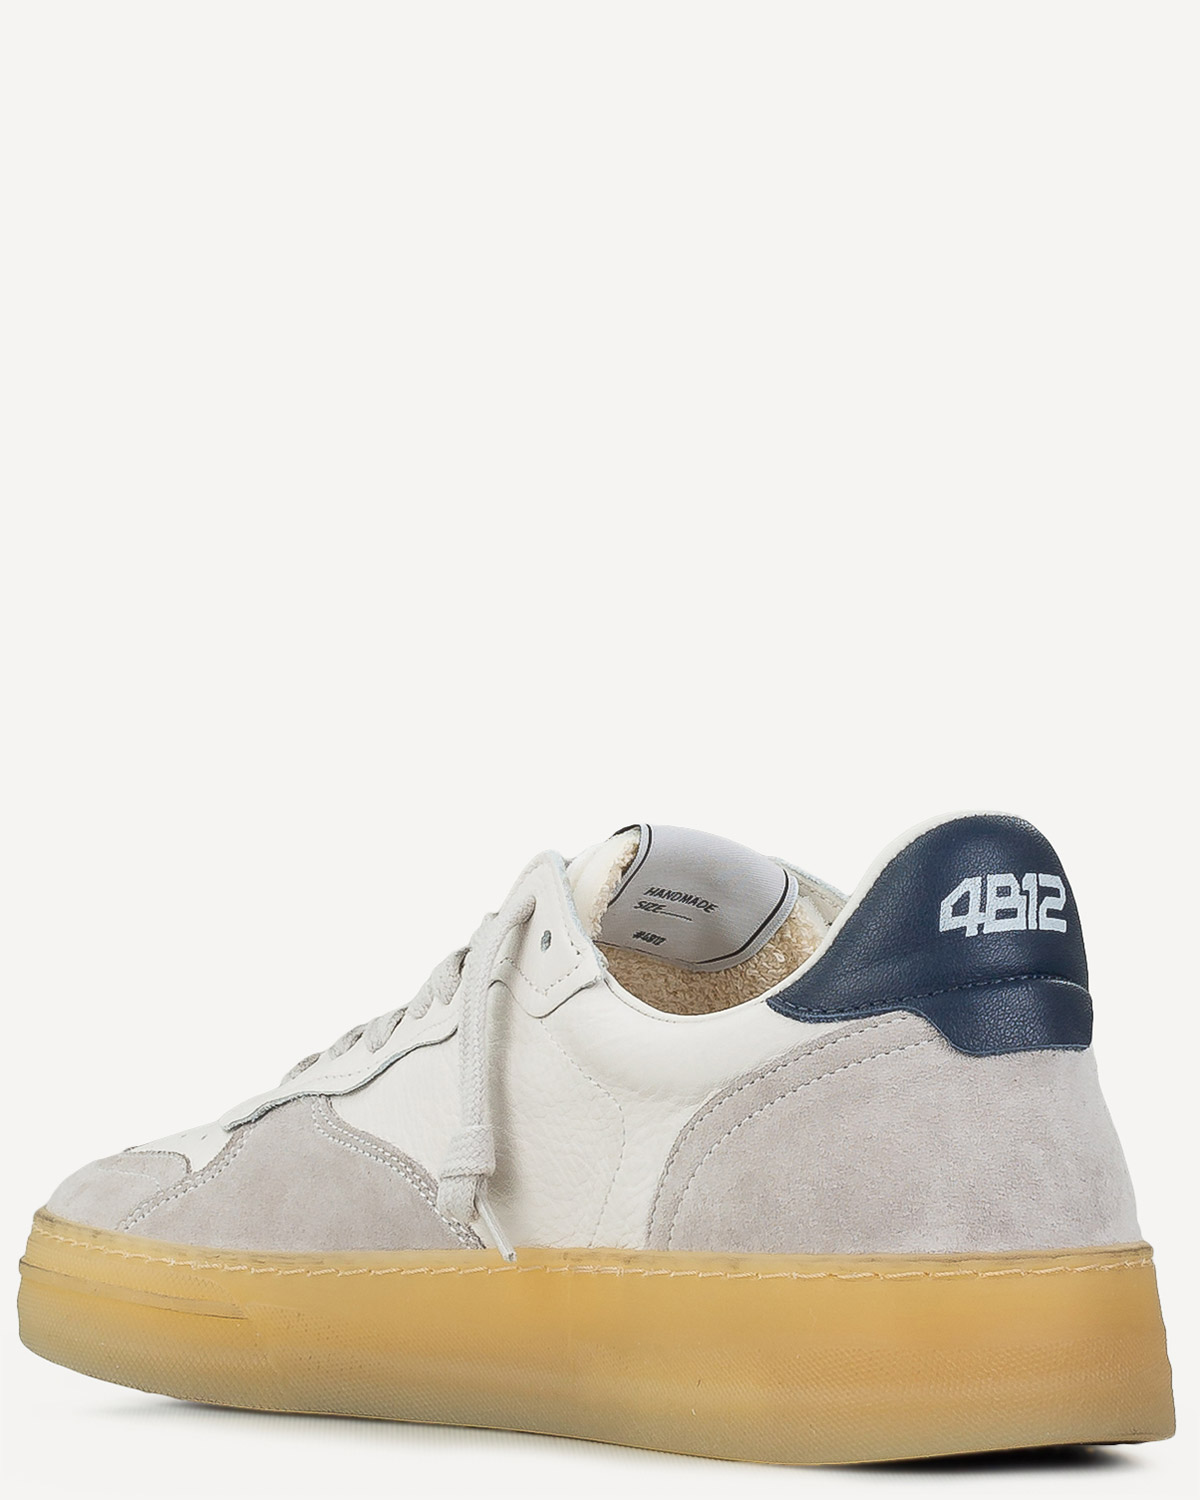 Άνδρας - Sneakers - 4B12 Off White